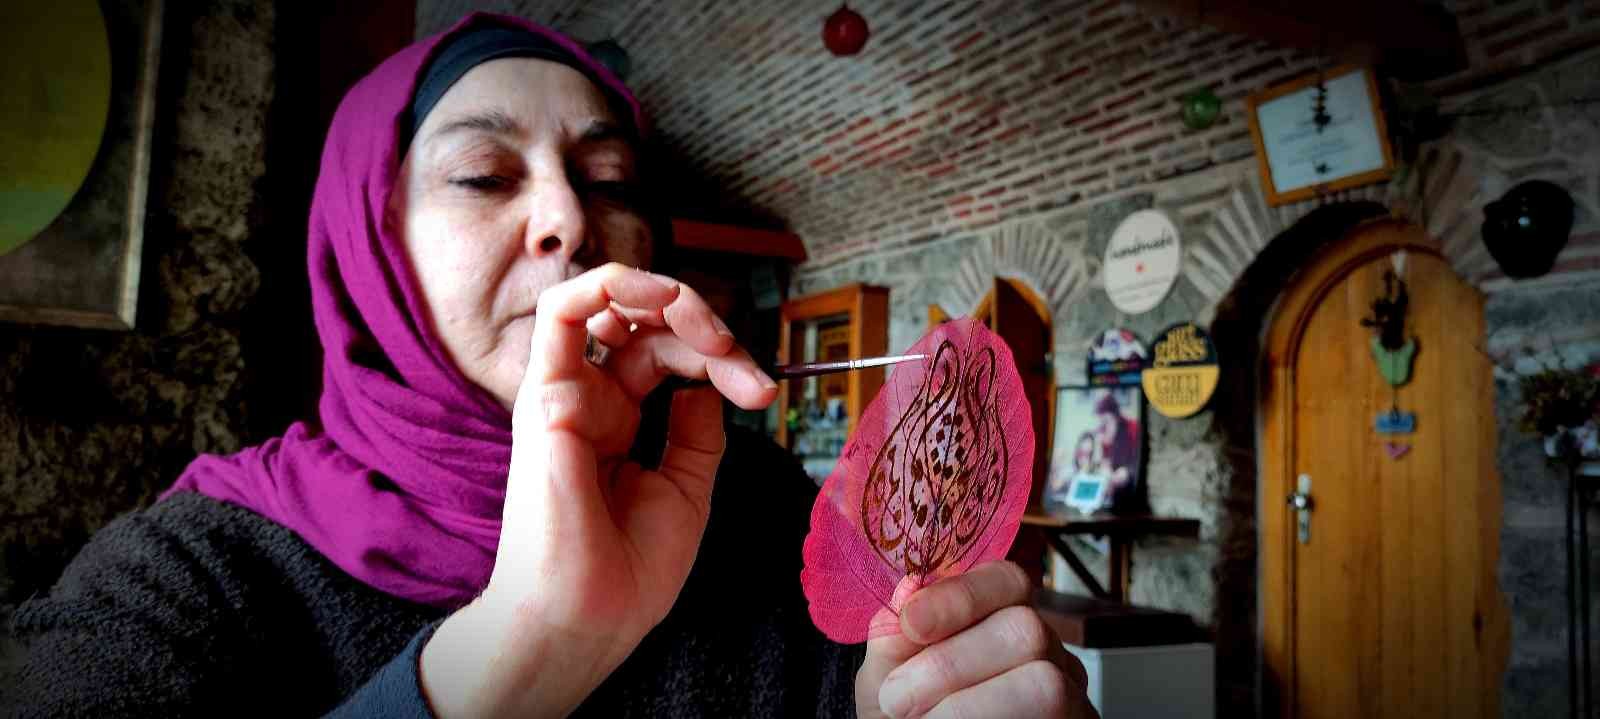 Bursa’da kendi başına öğrendiği sanatla ortaya mükemmel eserler çıkaran usta, kurutulmuş yaprakların üzerine hat ve minyatür çalışması yaparak ...